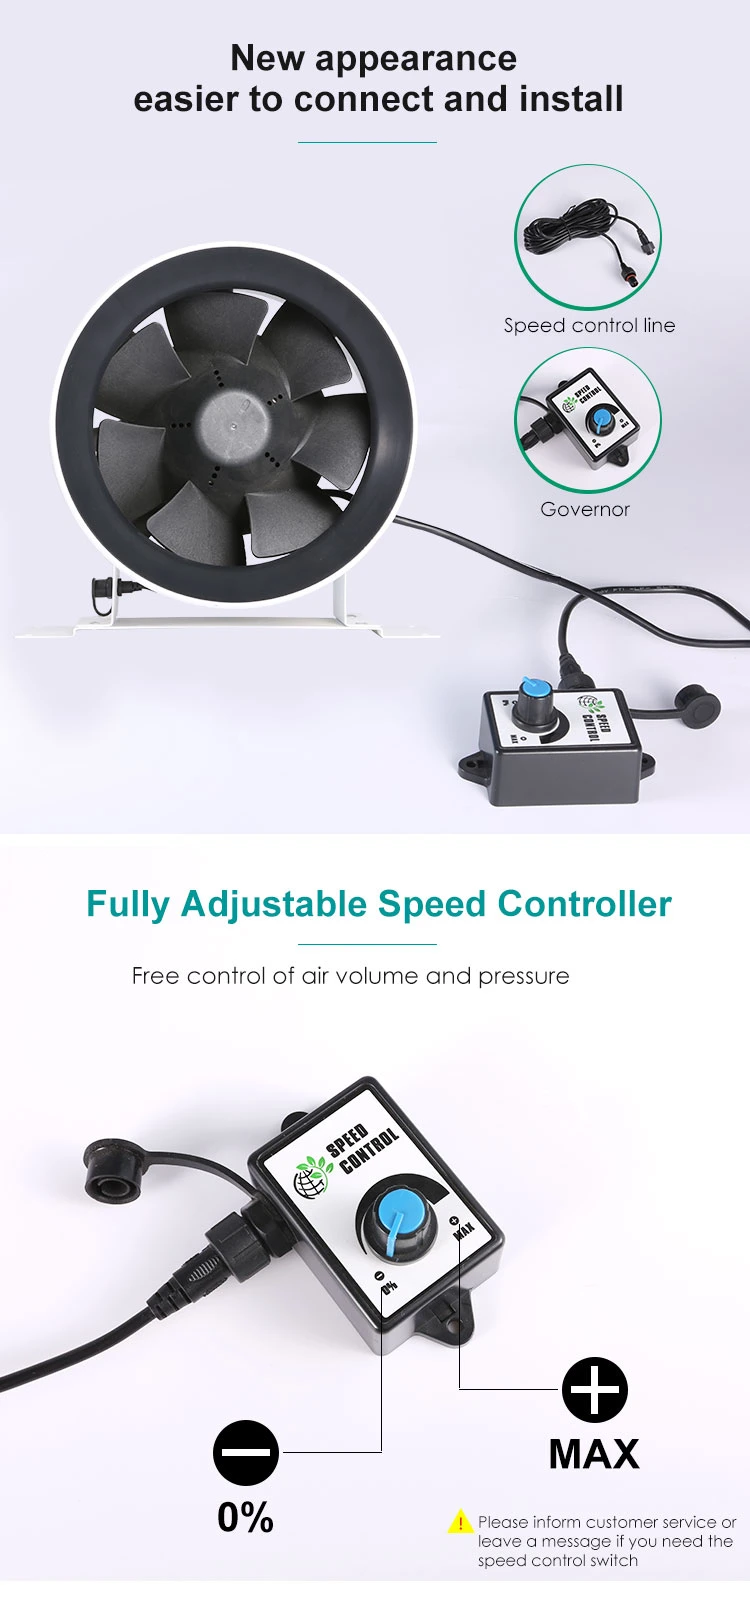 Ec Customized Silent Fan Soundproofed Tube Inline Duct Fan